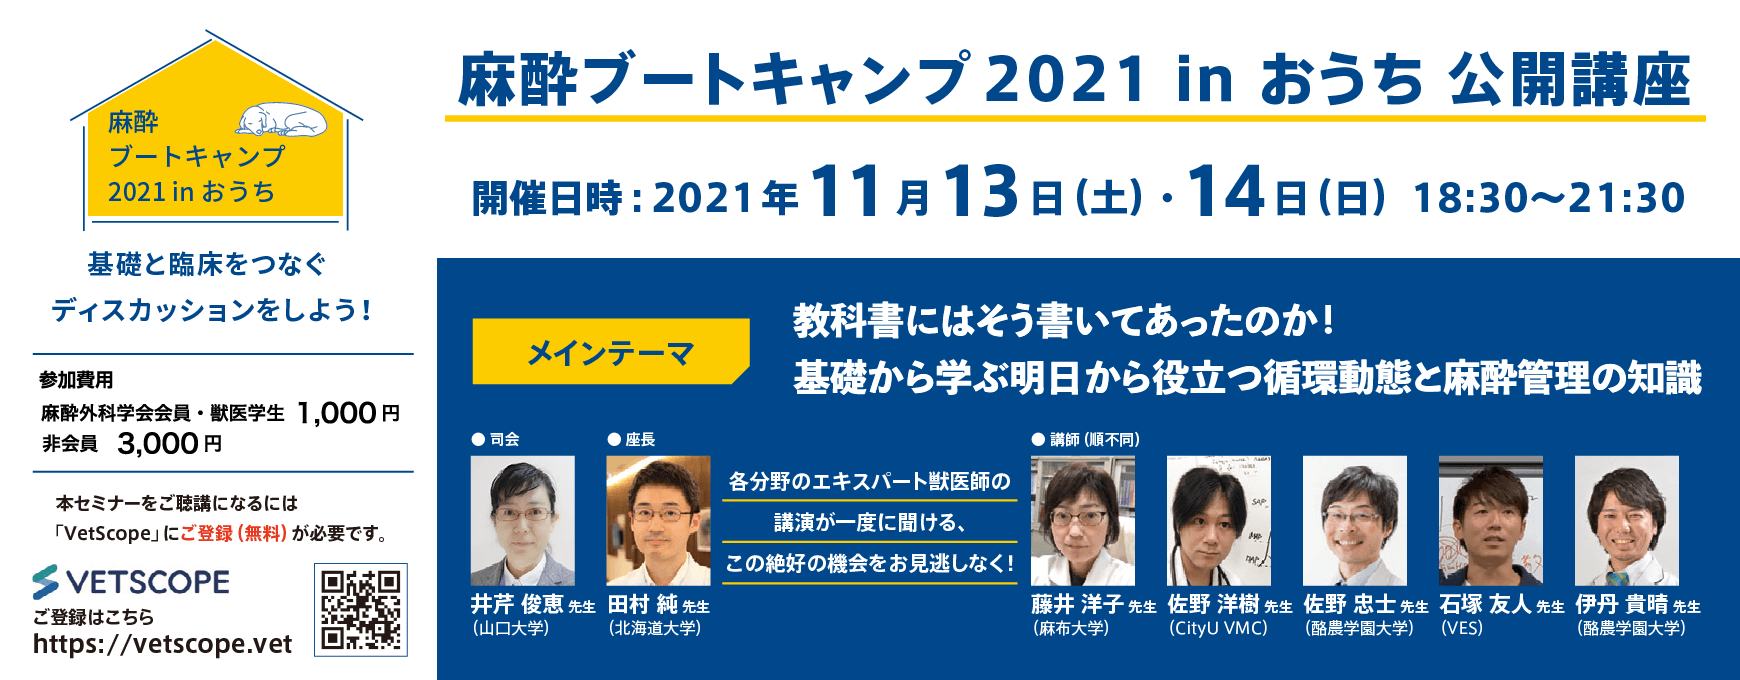 麻酔ブートキャンプ2021 in おうち 公開講座